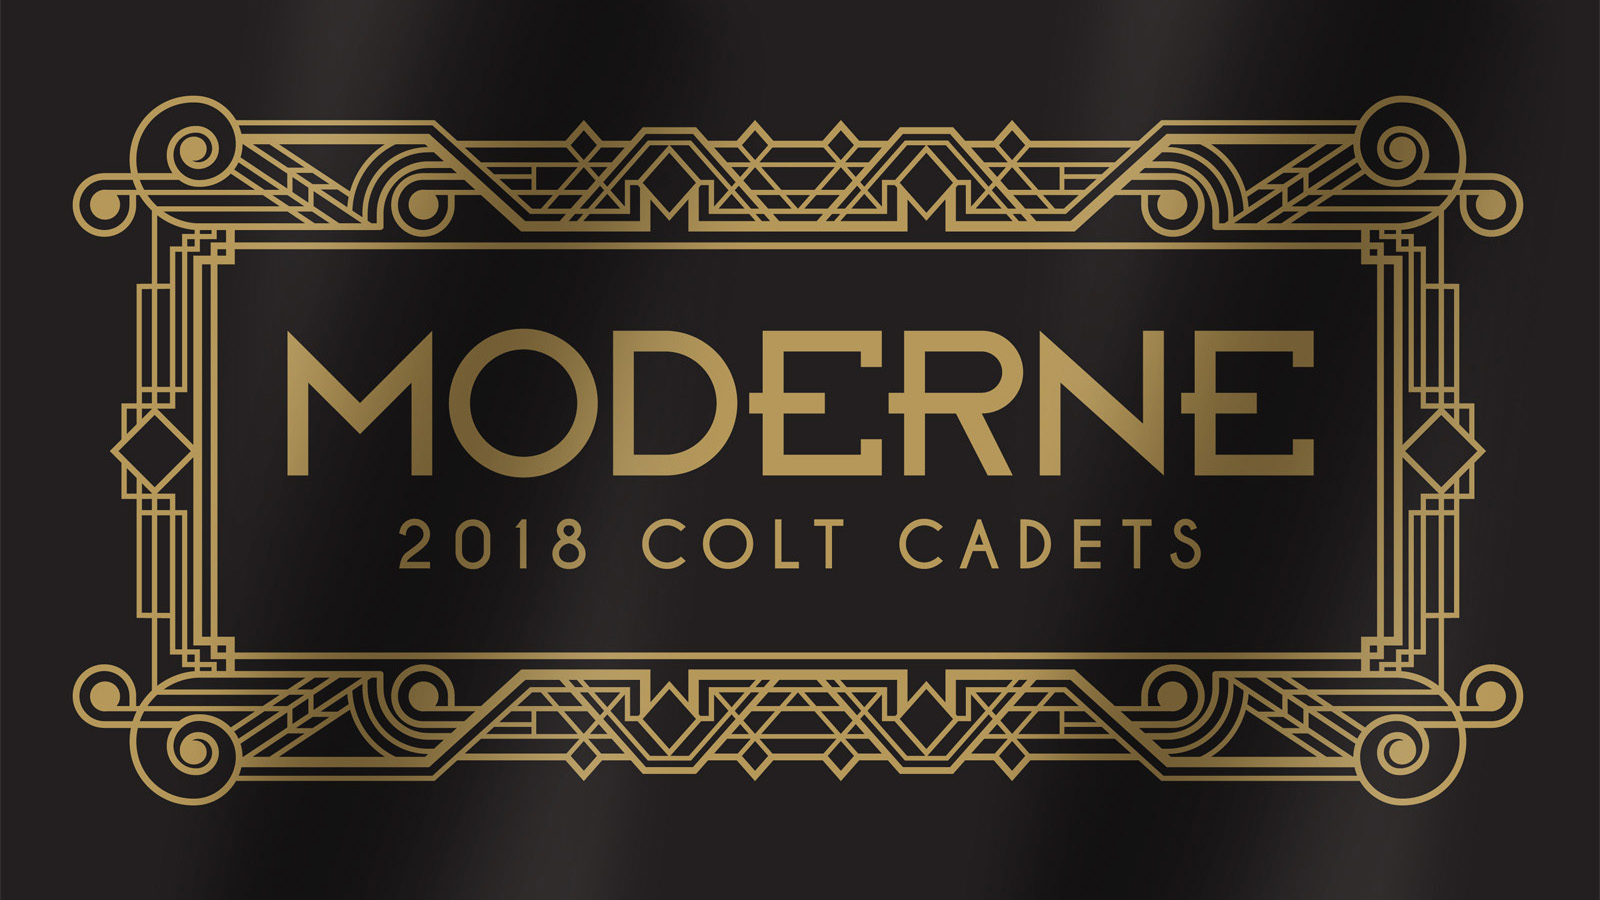 2018 Colt Cadets Production